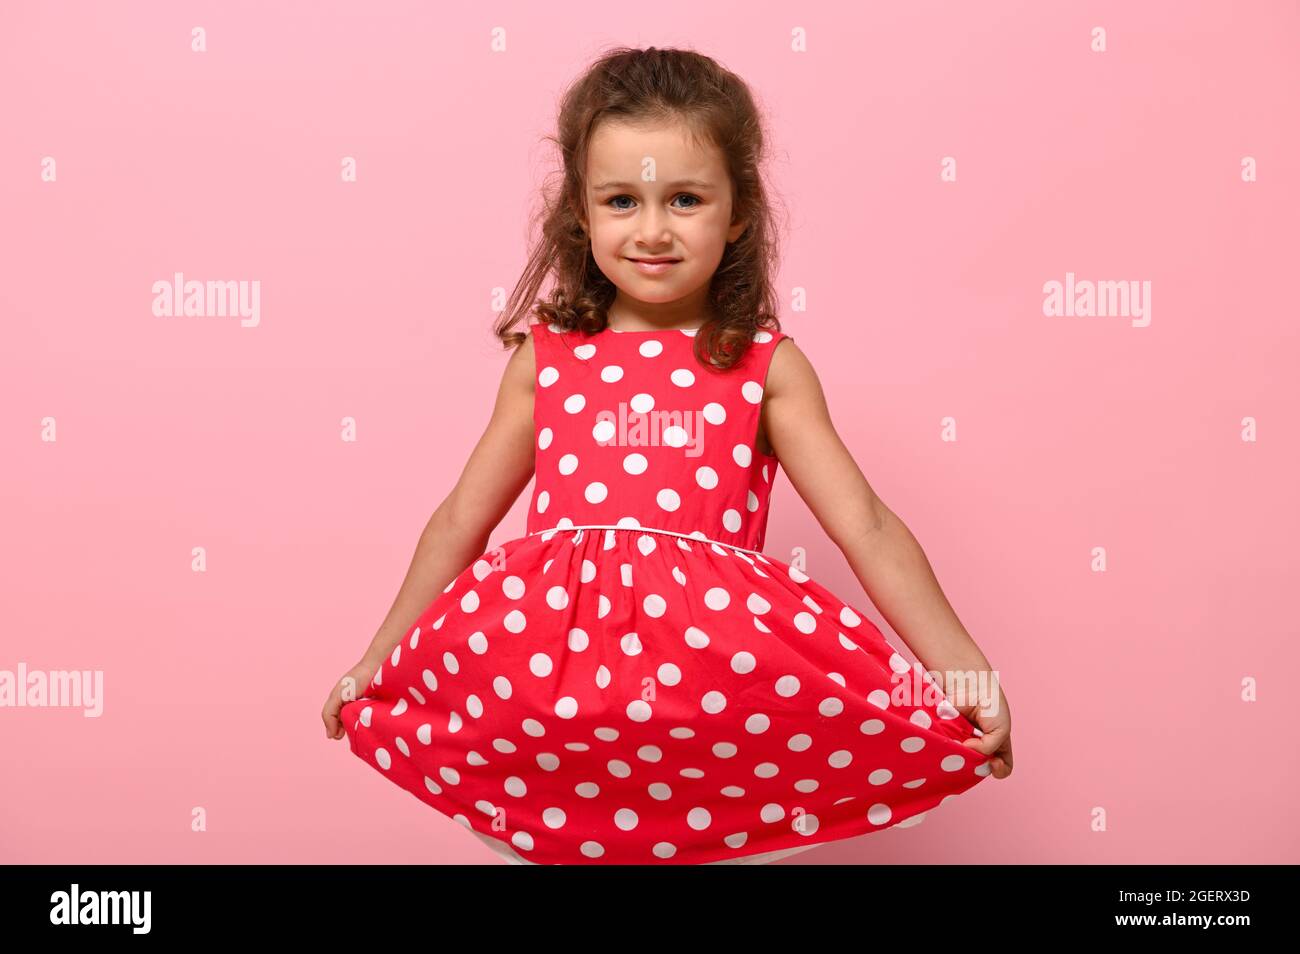 Portrait von niedlichen charmanten Mädchen in einem rosa Kleid mit weißen  Punkten posiert auf rosa Hintergrund niedlich lächelnd und hält den Boden  des Kleides mit ihm Stockfotografie - Alamy